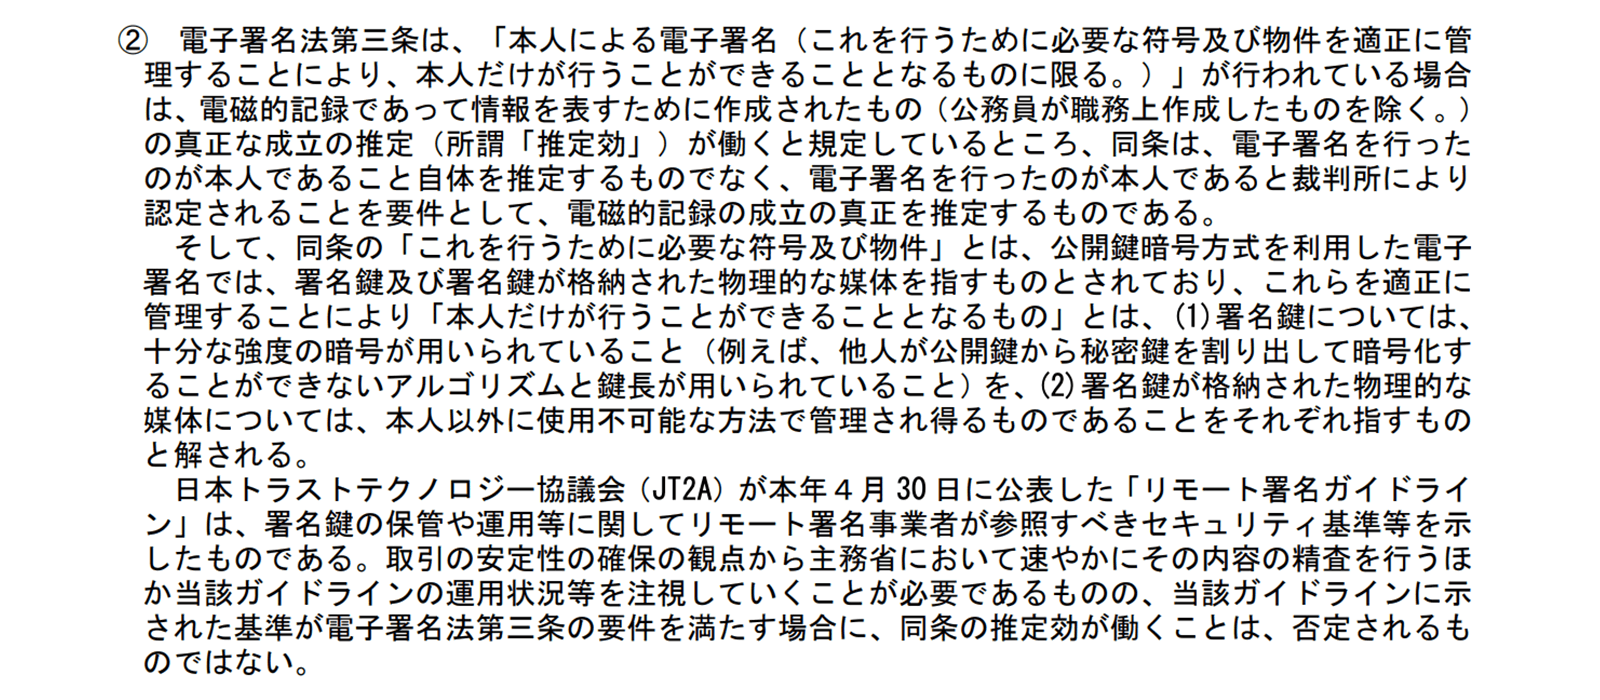  https://www8.cao.go.jp/kisei-kaikaku/kisei/meeting/wg/seicho/20200512/200512seicho04.pdf 2020年8月27日最終アクセス